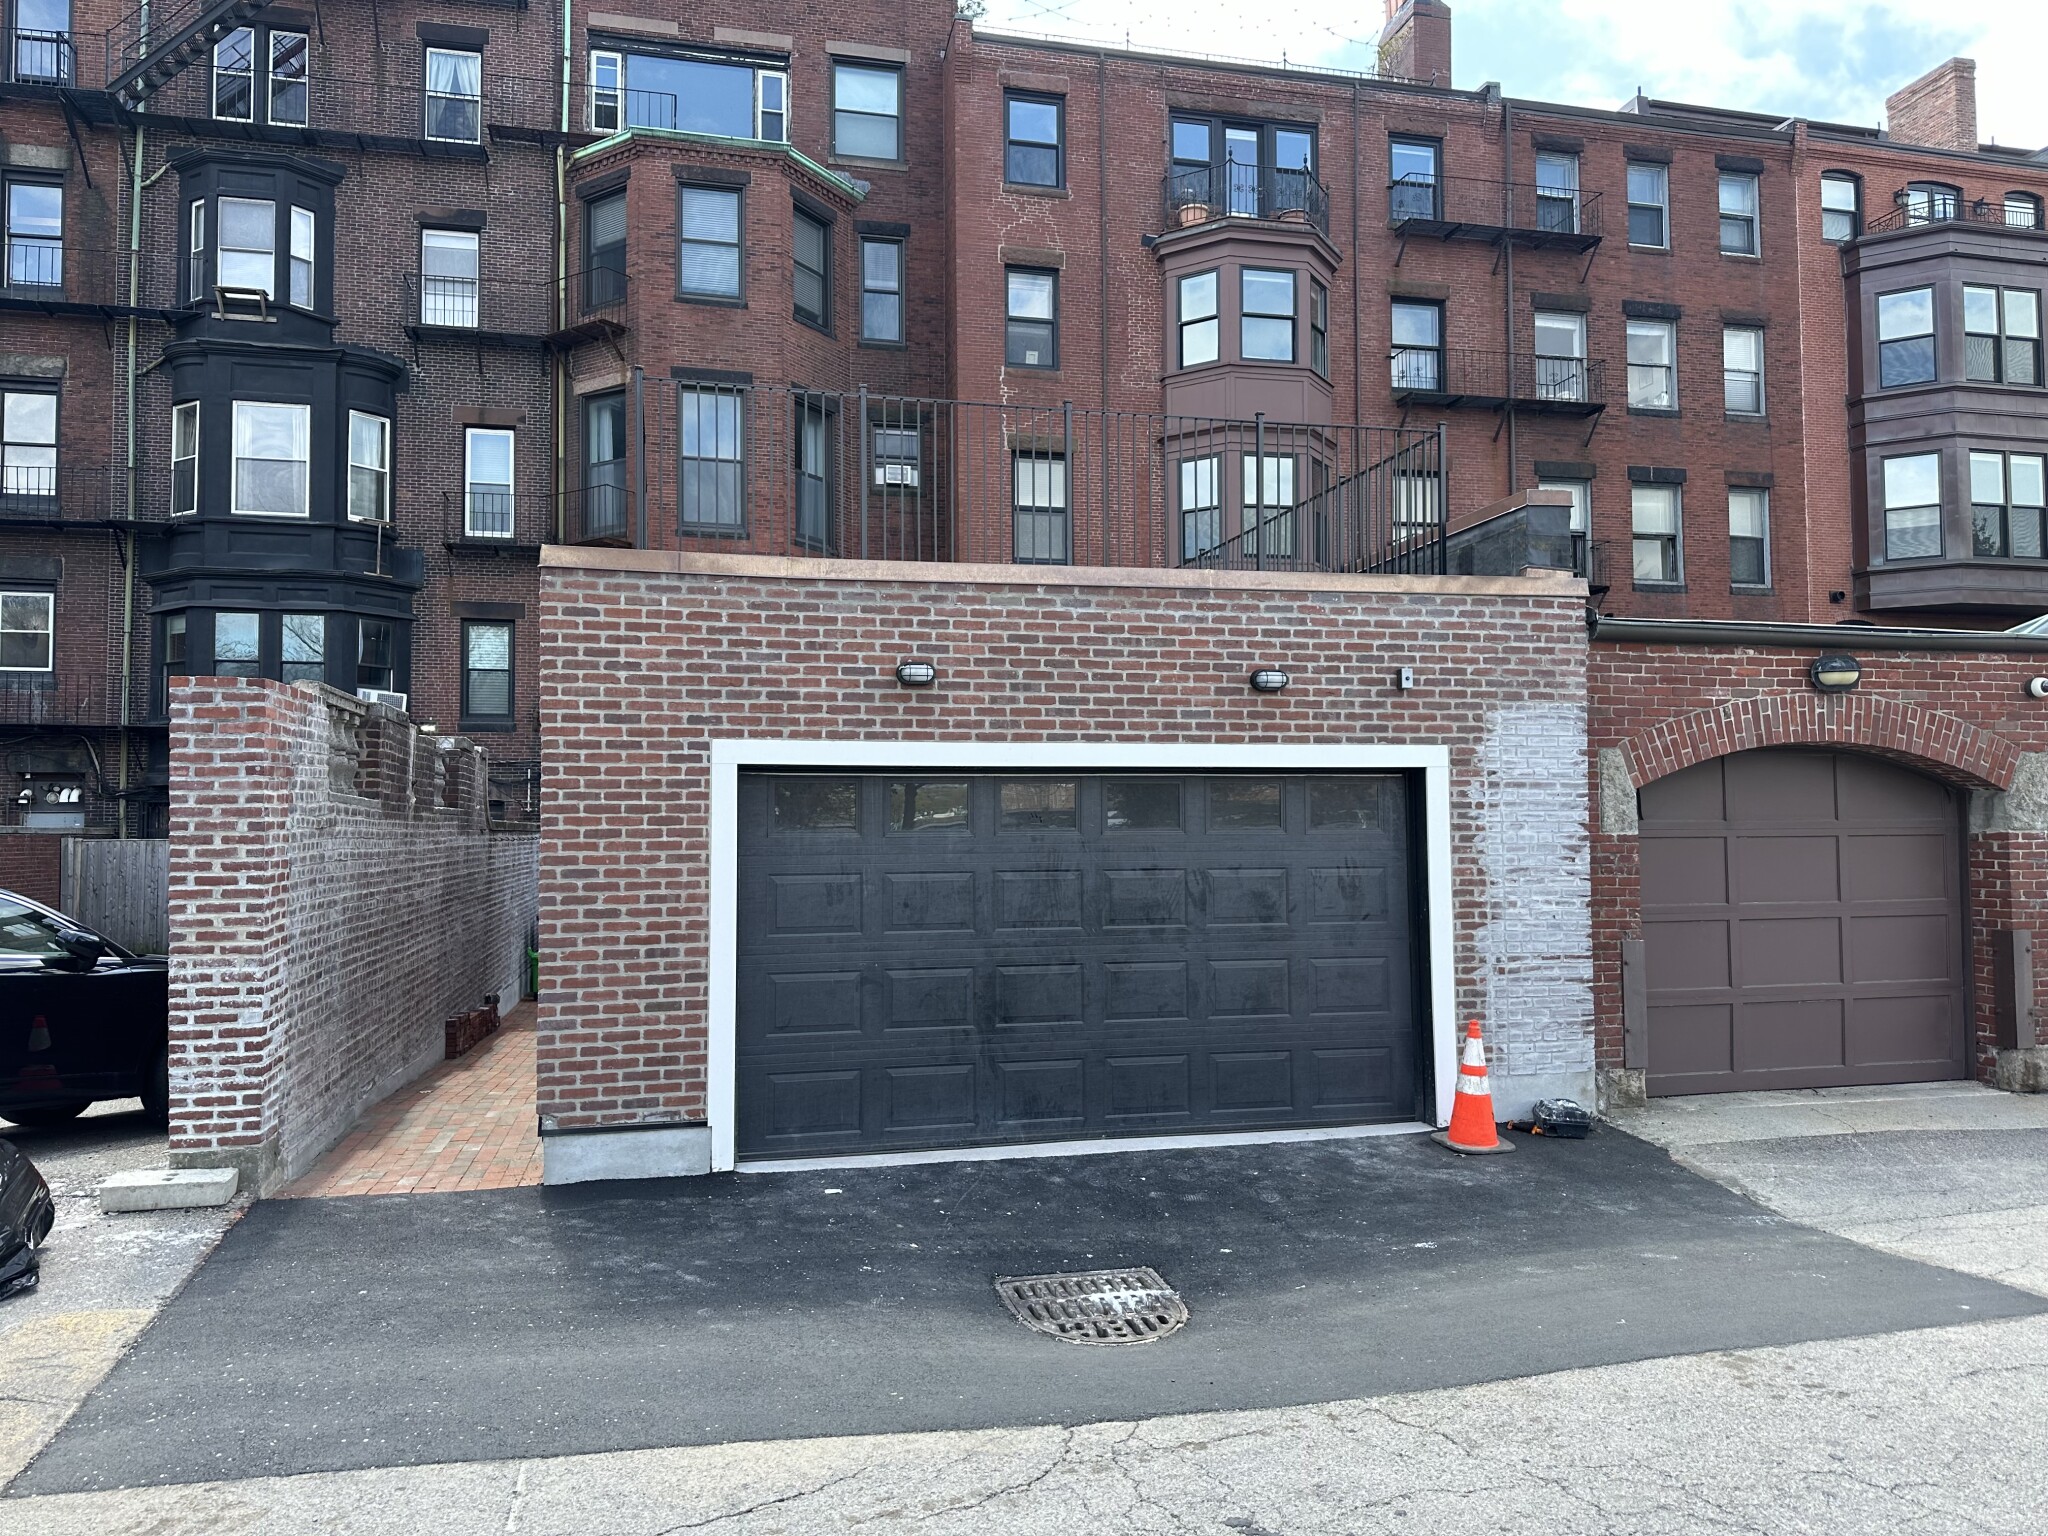 Photos of apartment on Beacon,Boston MA 02116